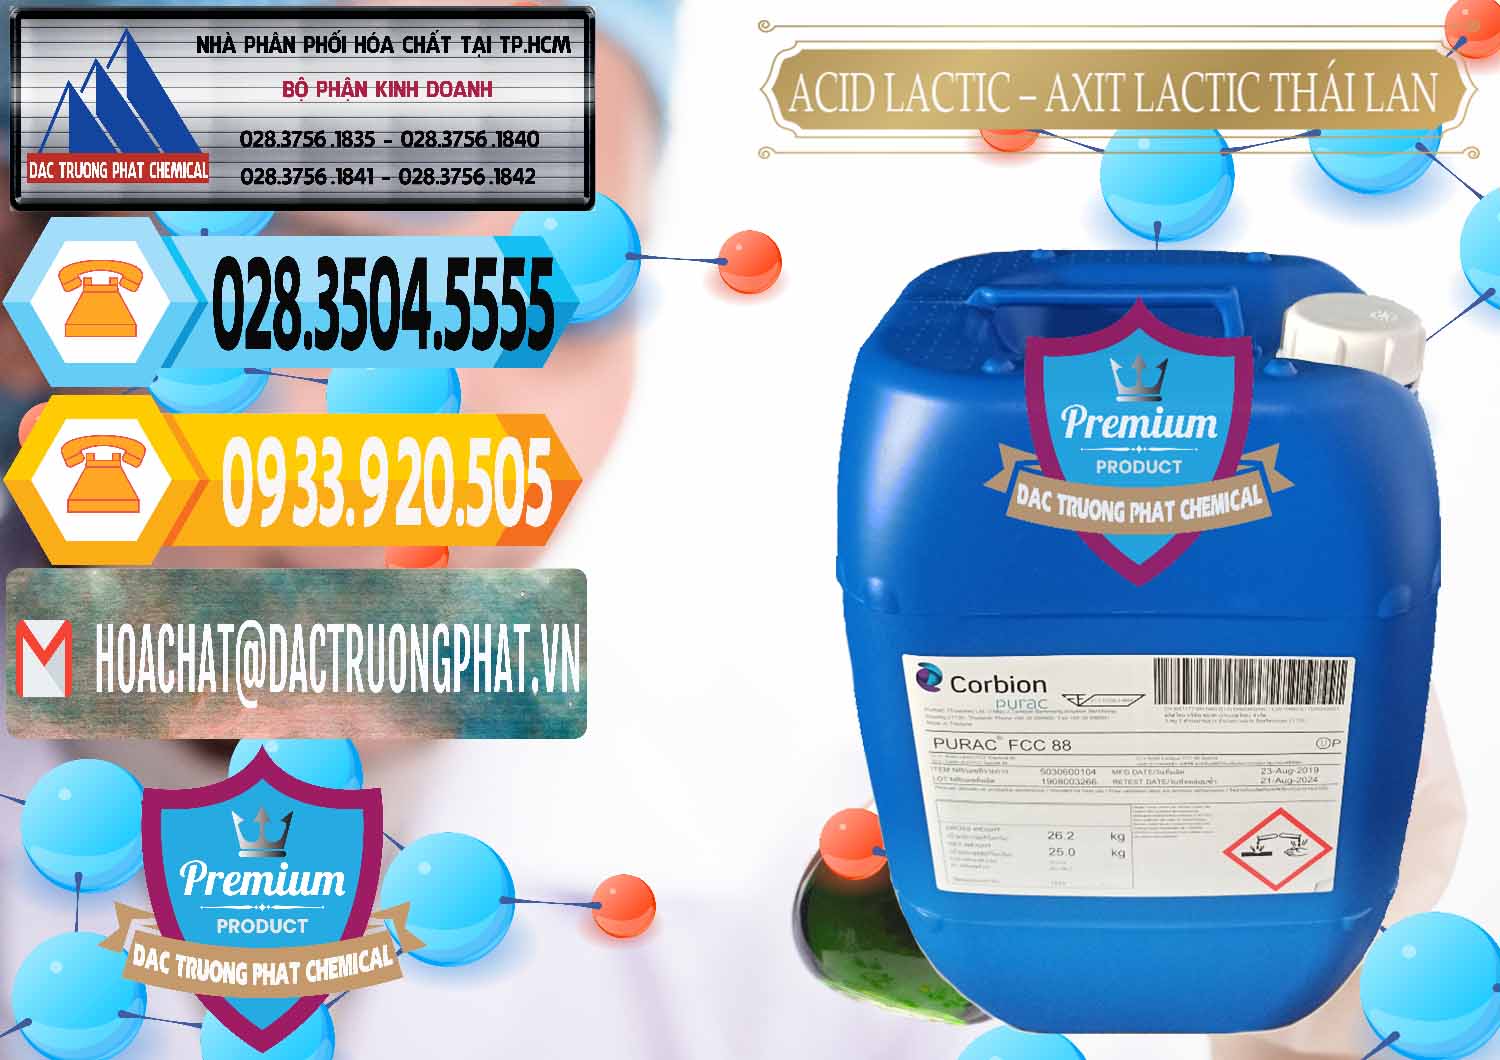 Nhà phân phối & bán Acid Lactic – Axit Lactic Thái Lan Purac FCC 88 - 0012 - Cty cung cấp và kinh doanh hóa chất tại TP.HCM - hoachattayrua.net